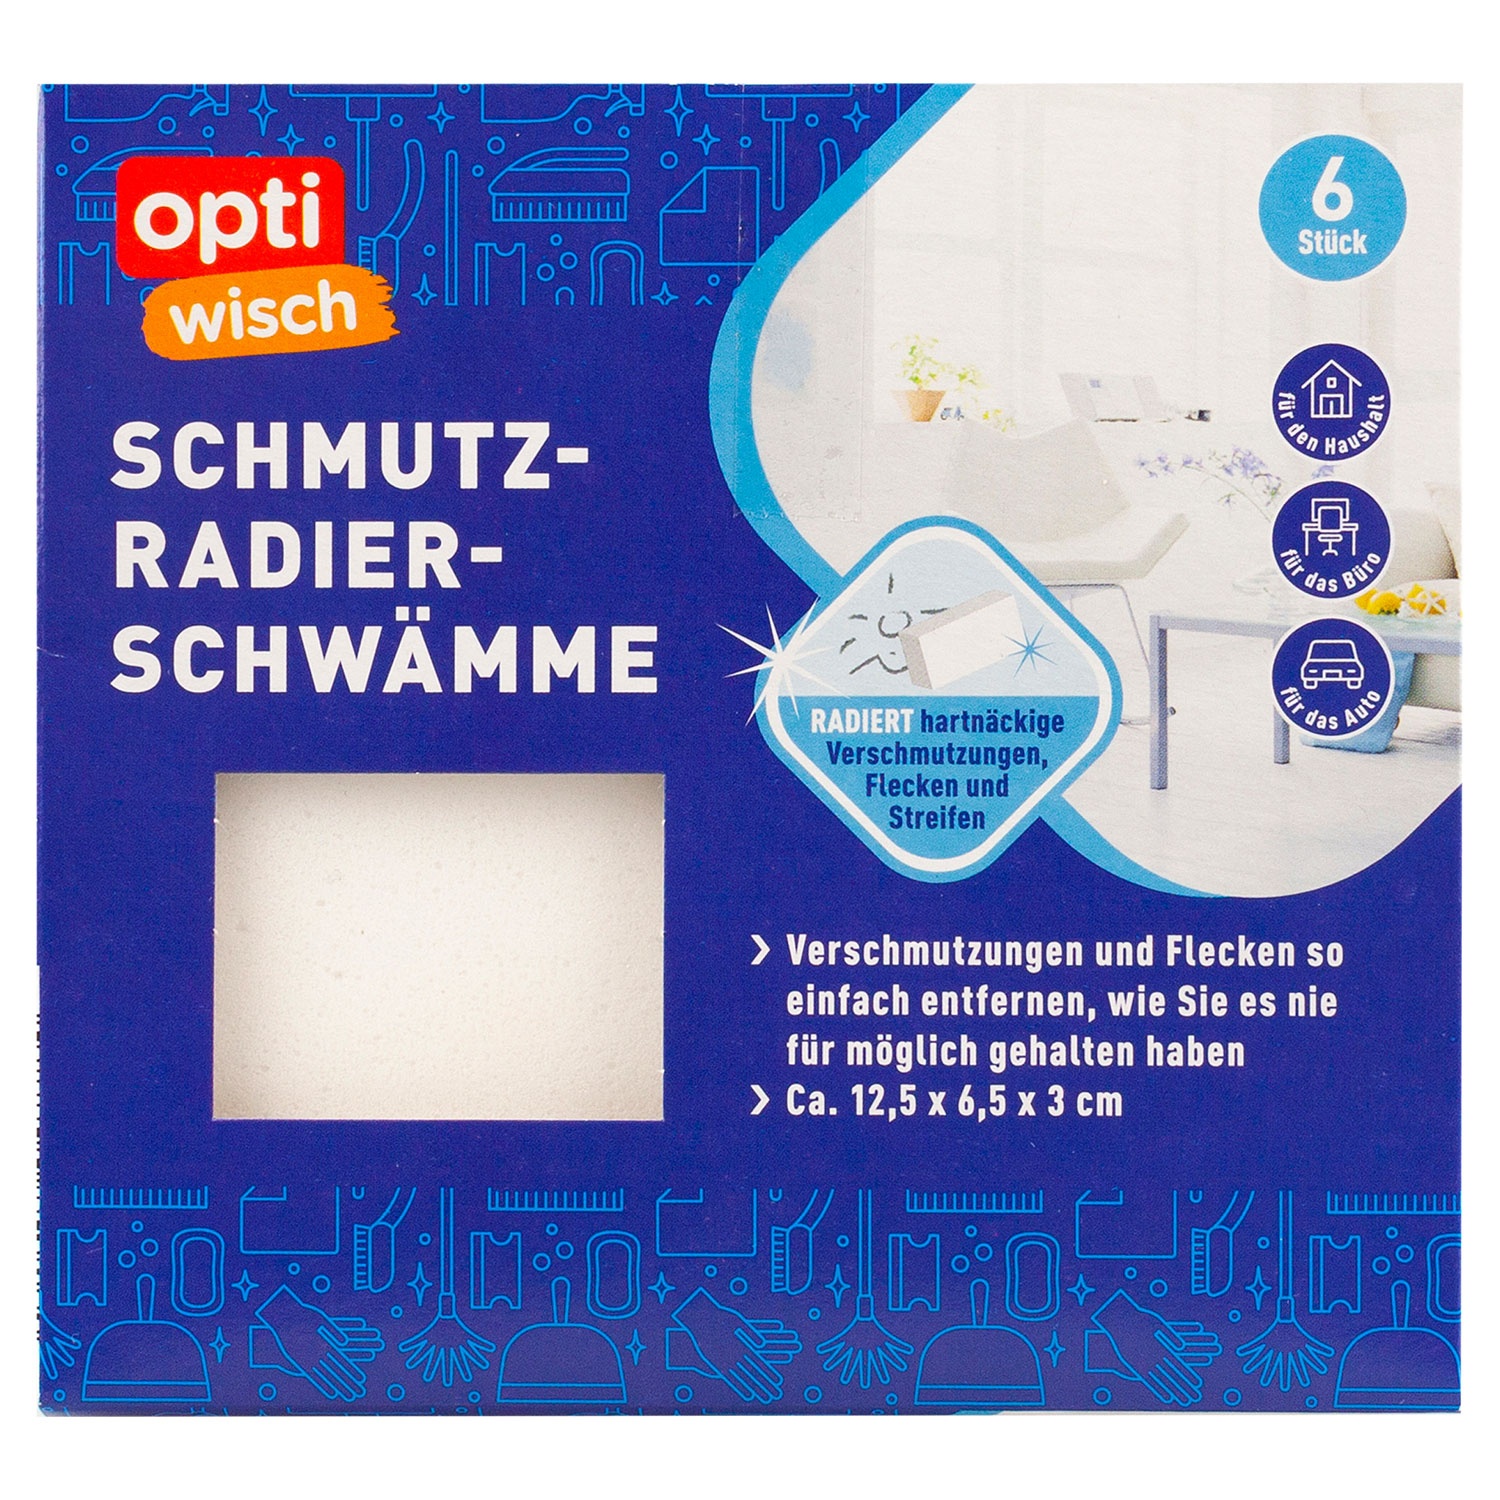 OPTIWISCH Schmutz-Radier-Schwämme, 6er-Packung